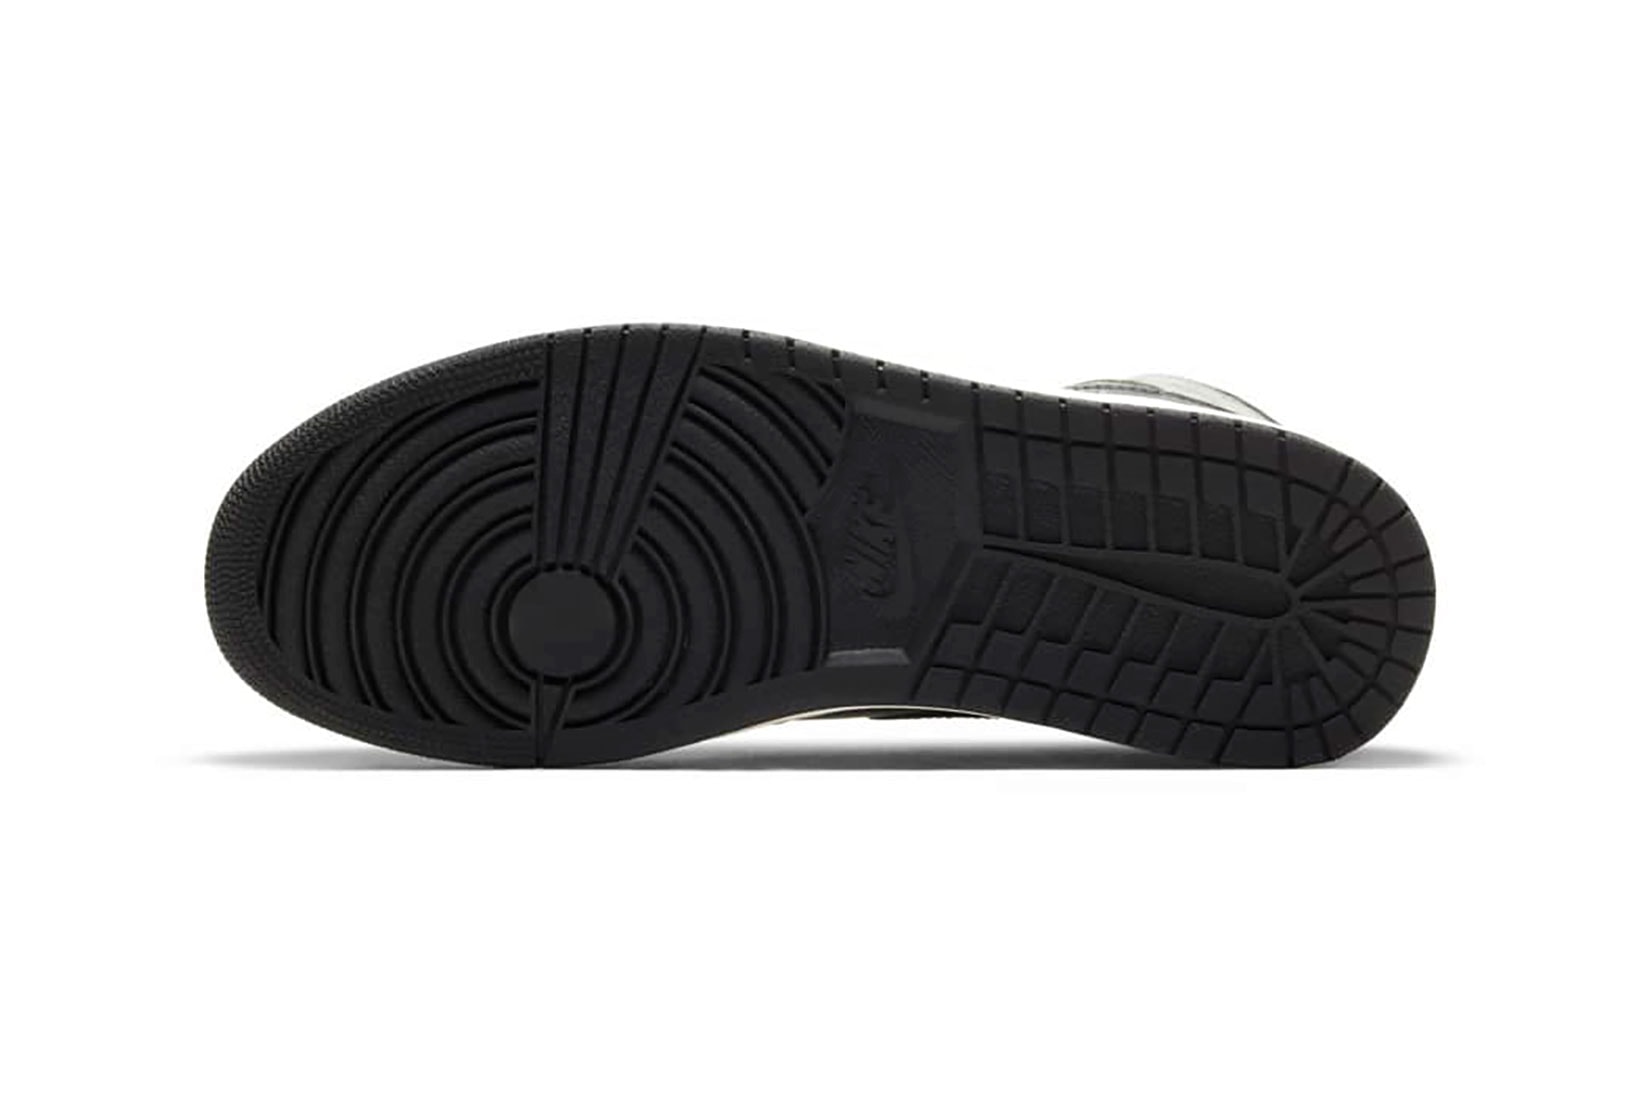 nike air jordan 1 aj1 sneakers rust shadow brown black colorway footwear shoes kicks sneakerhead lateral sole